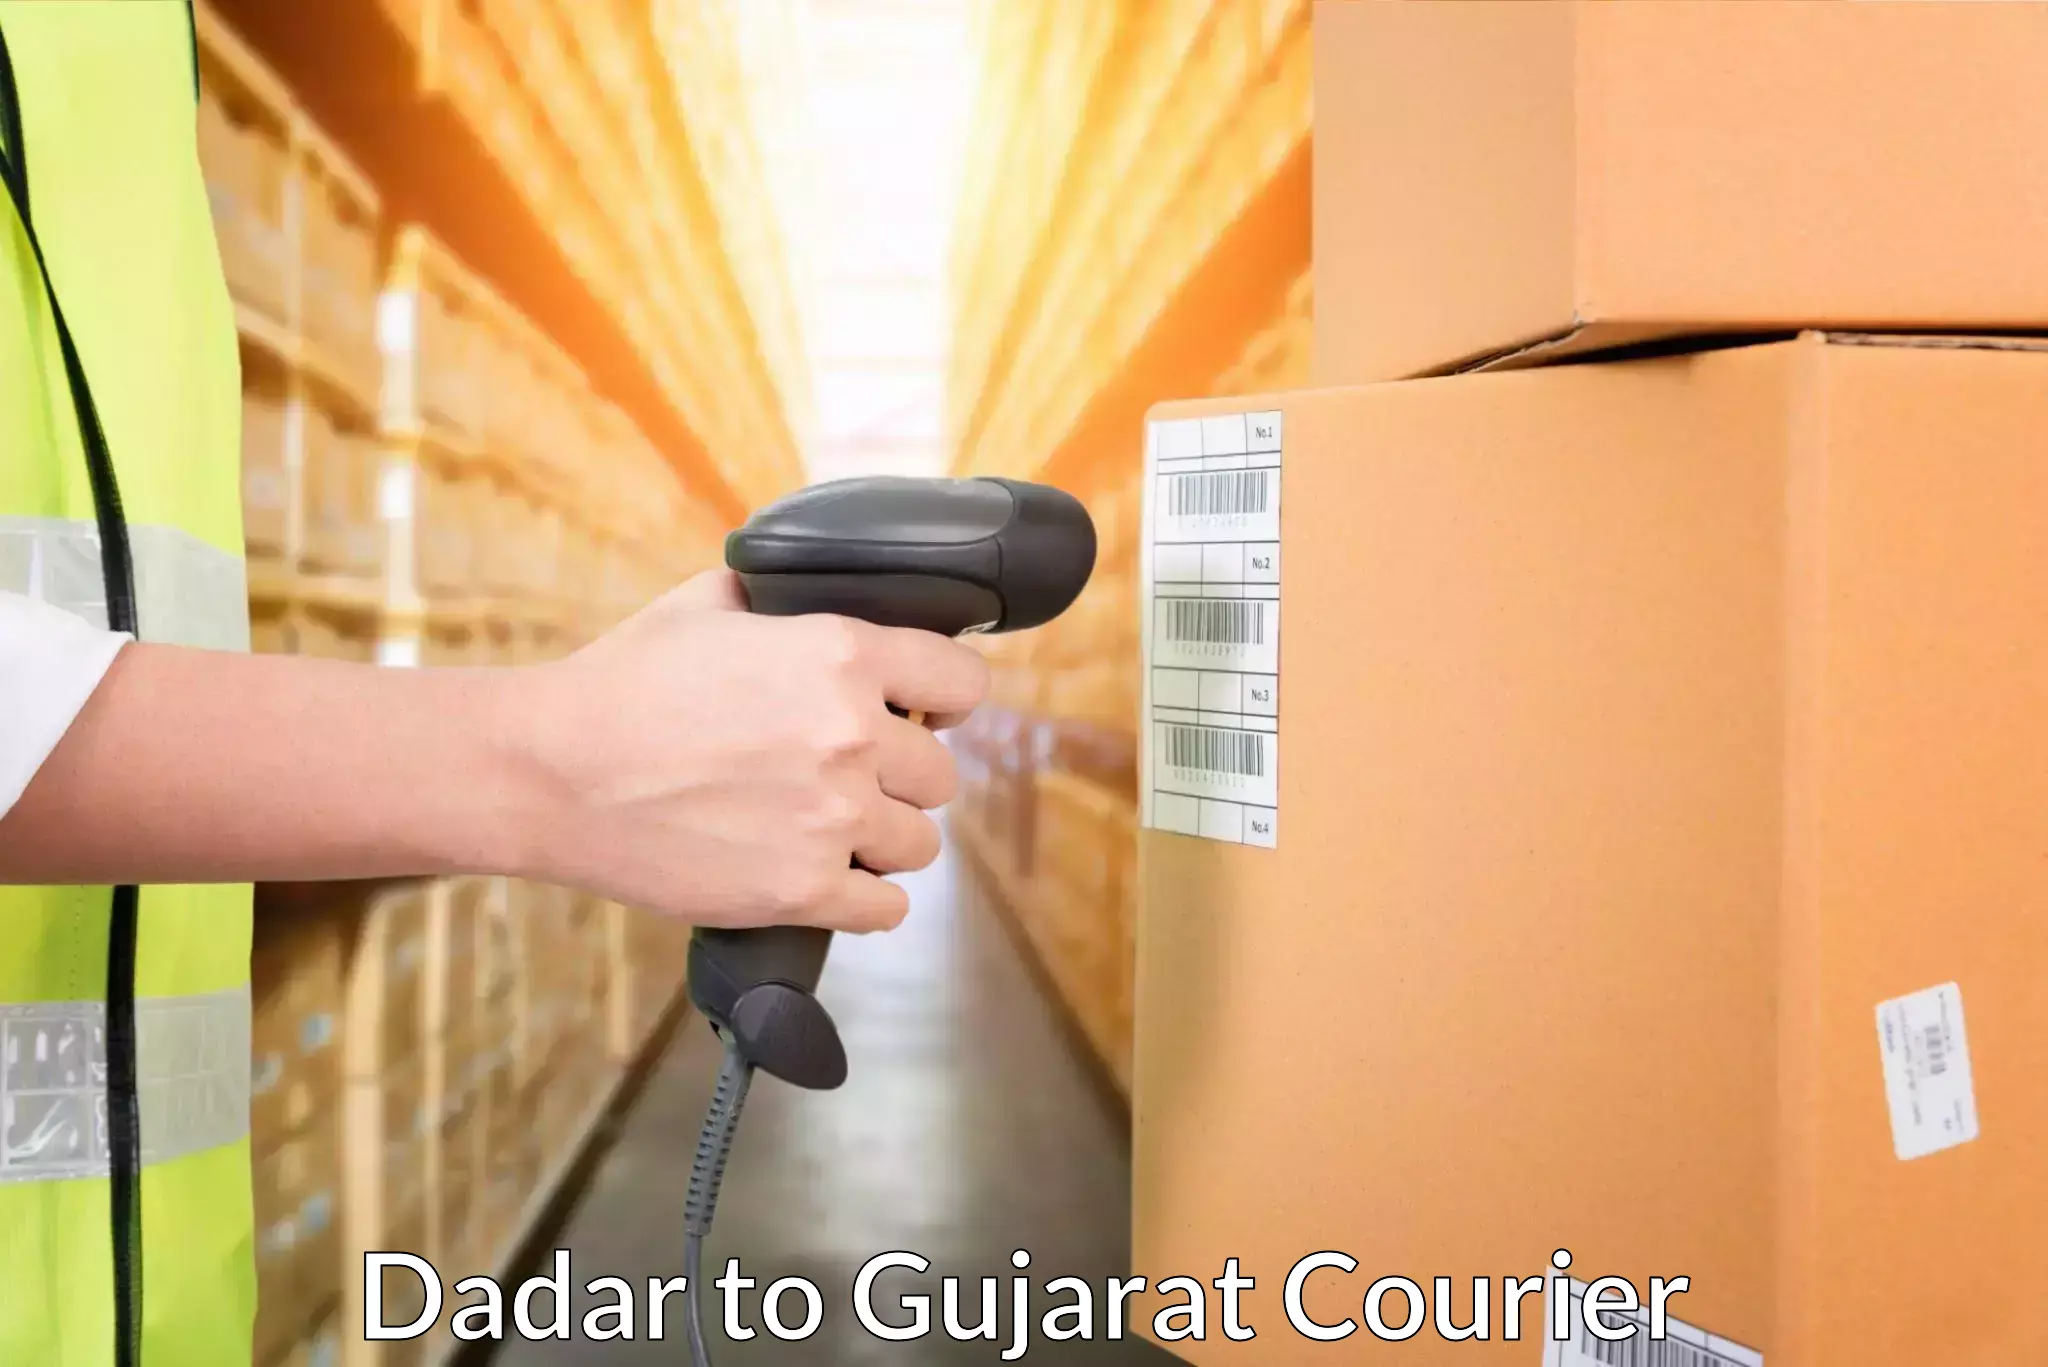 Customer-centric shipping Dadar to Gujarat